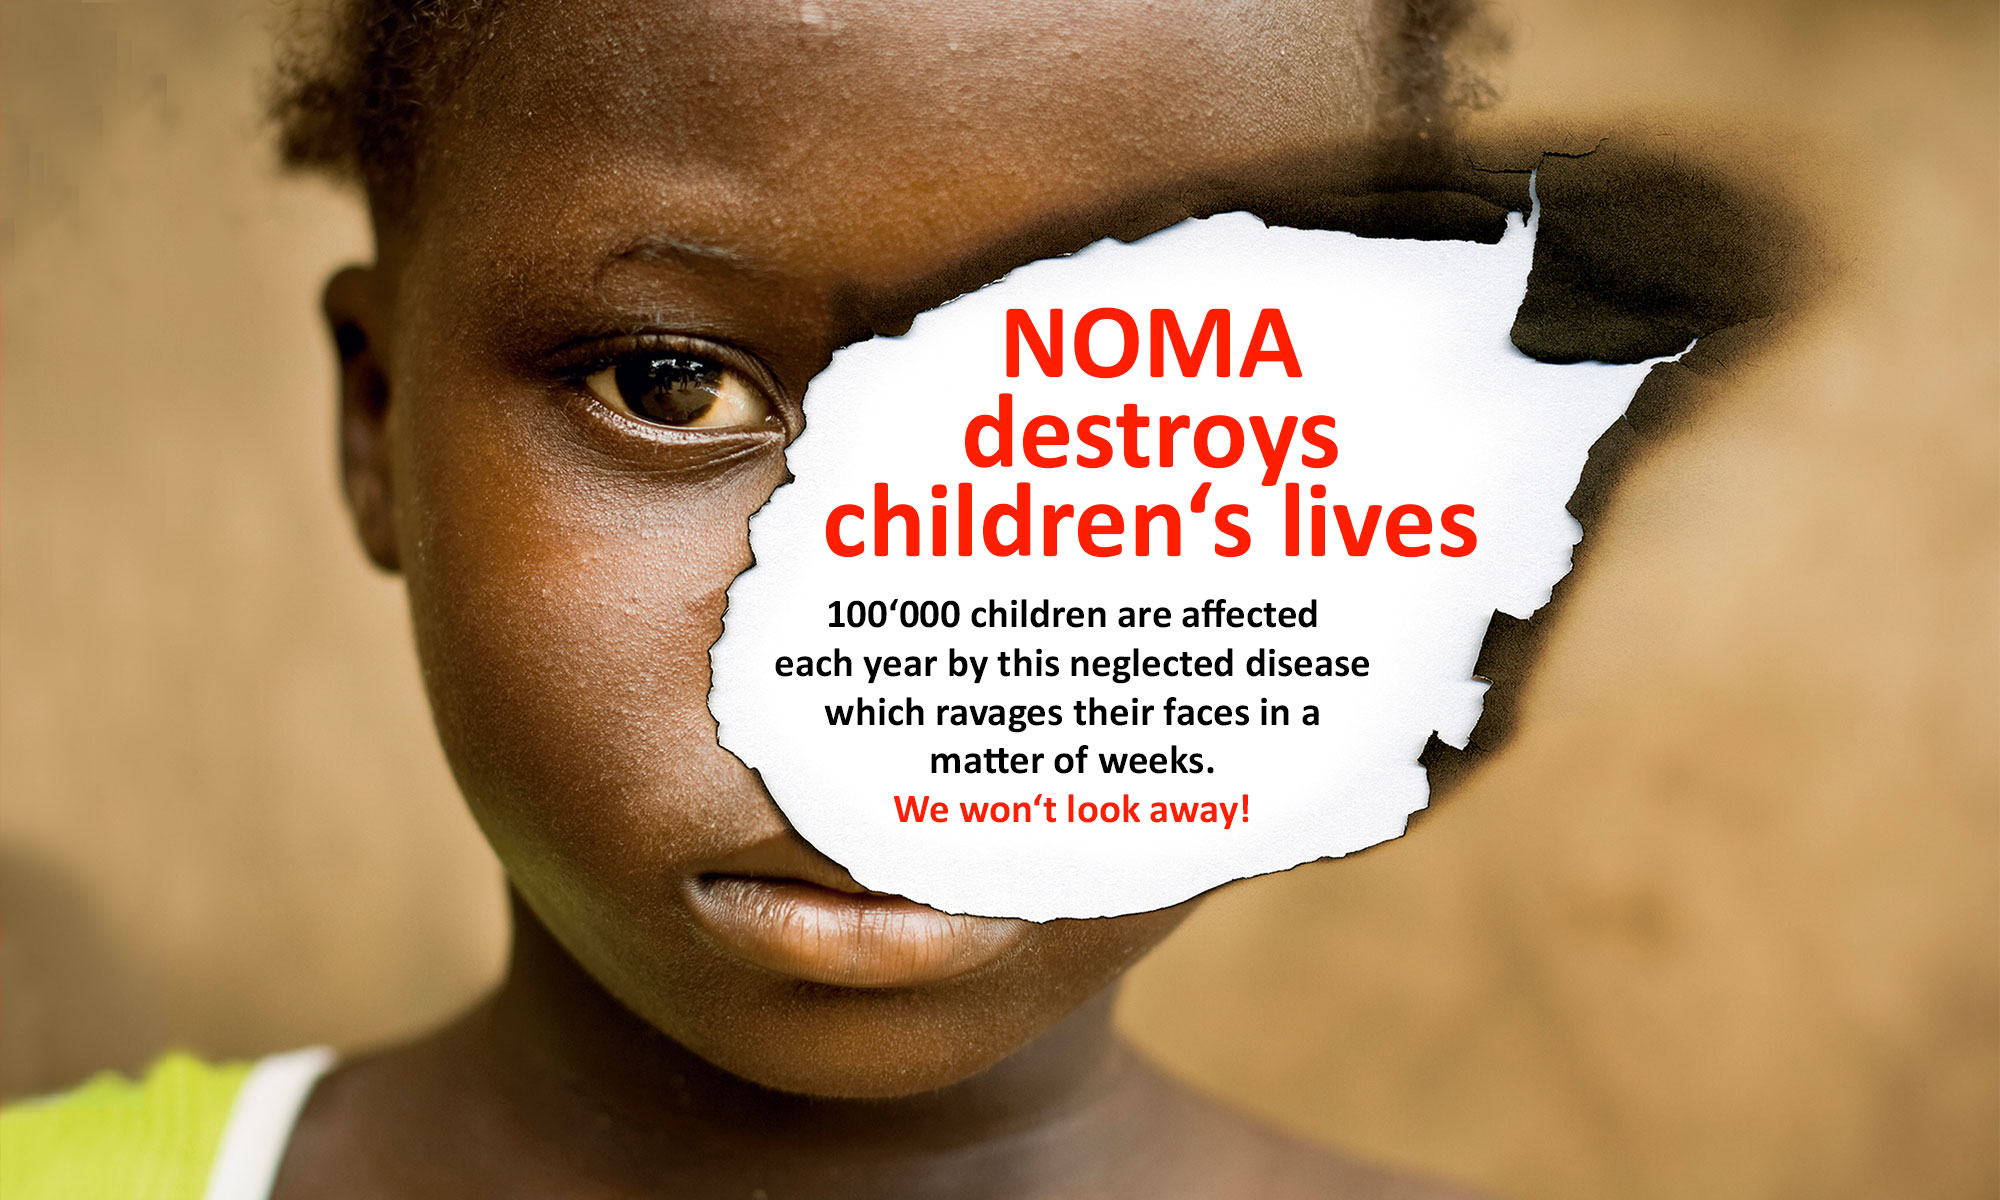 NOMA destroys children's lives.